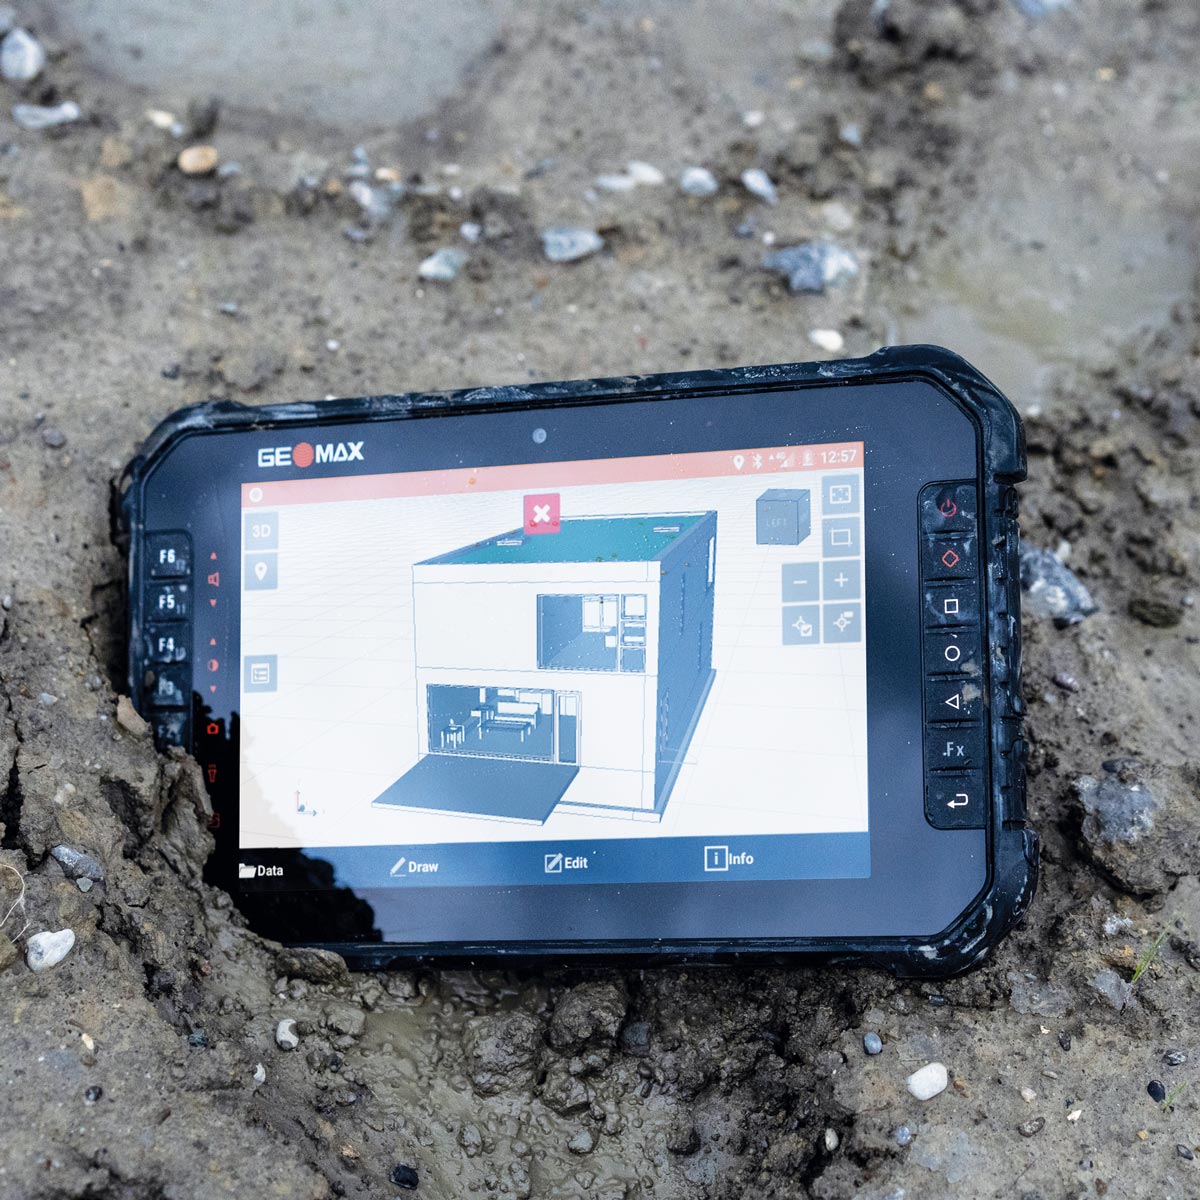 Rugged Tablet Zenius 08 mit 8-Zoll-Touchscreen für Android von GeoMax